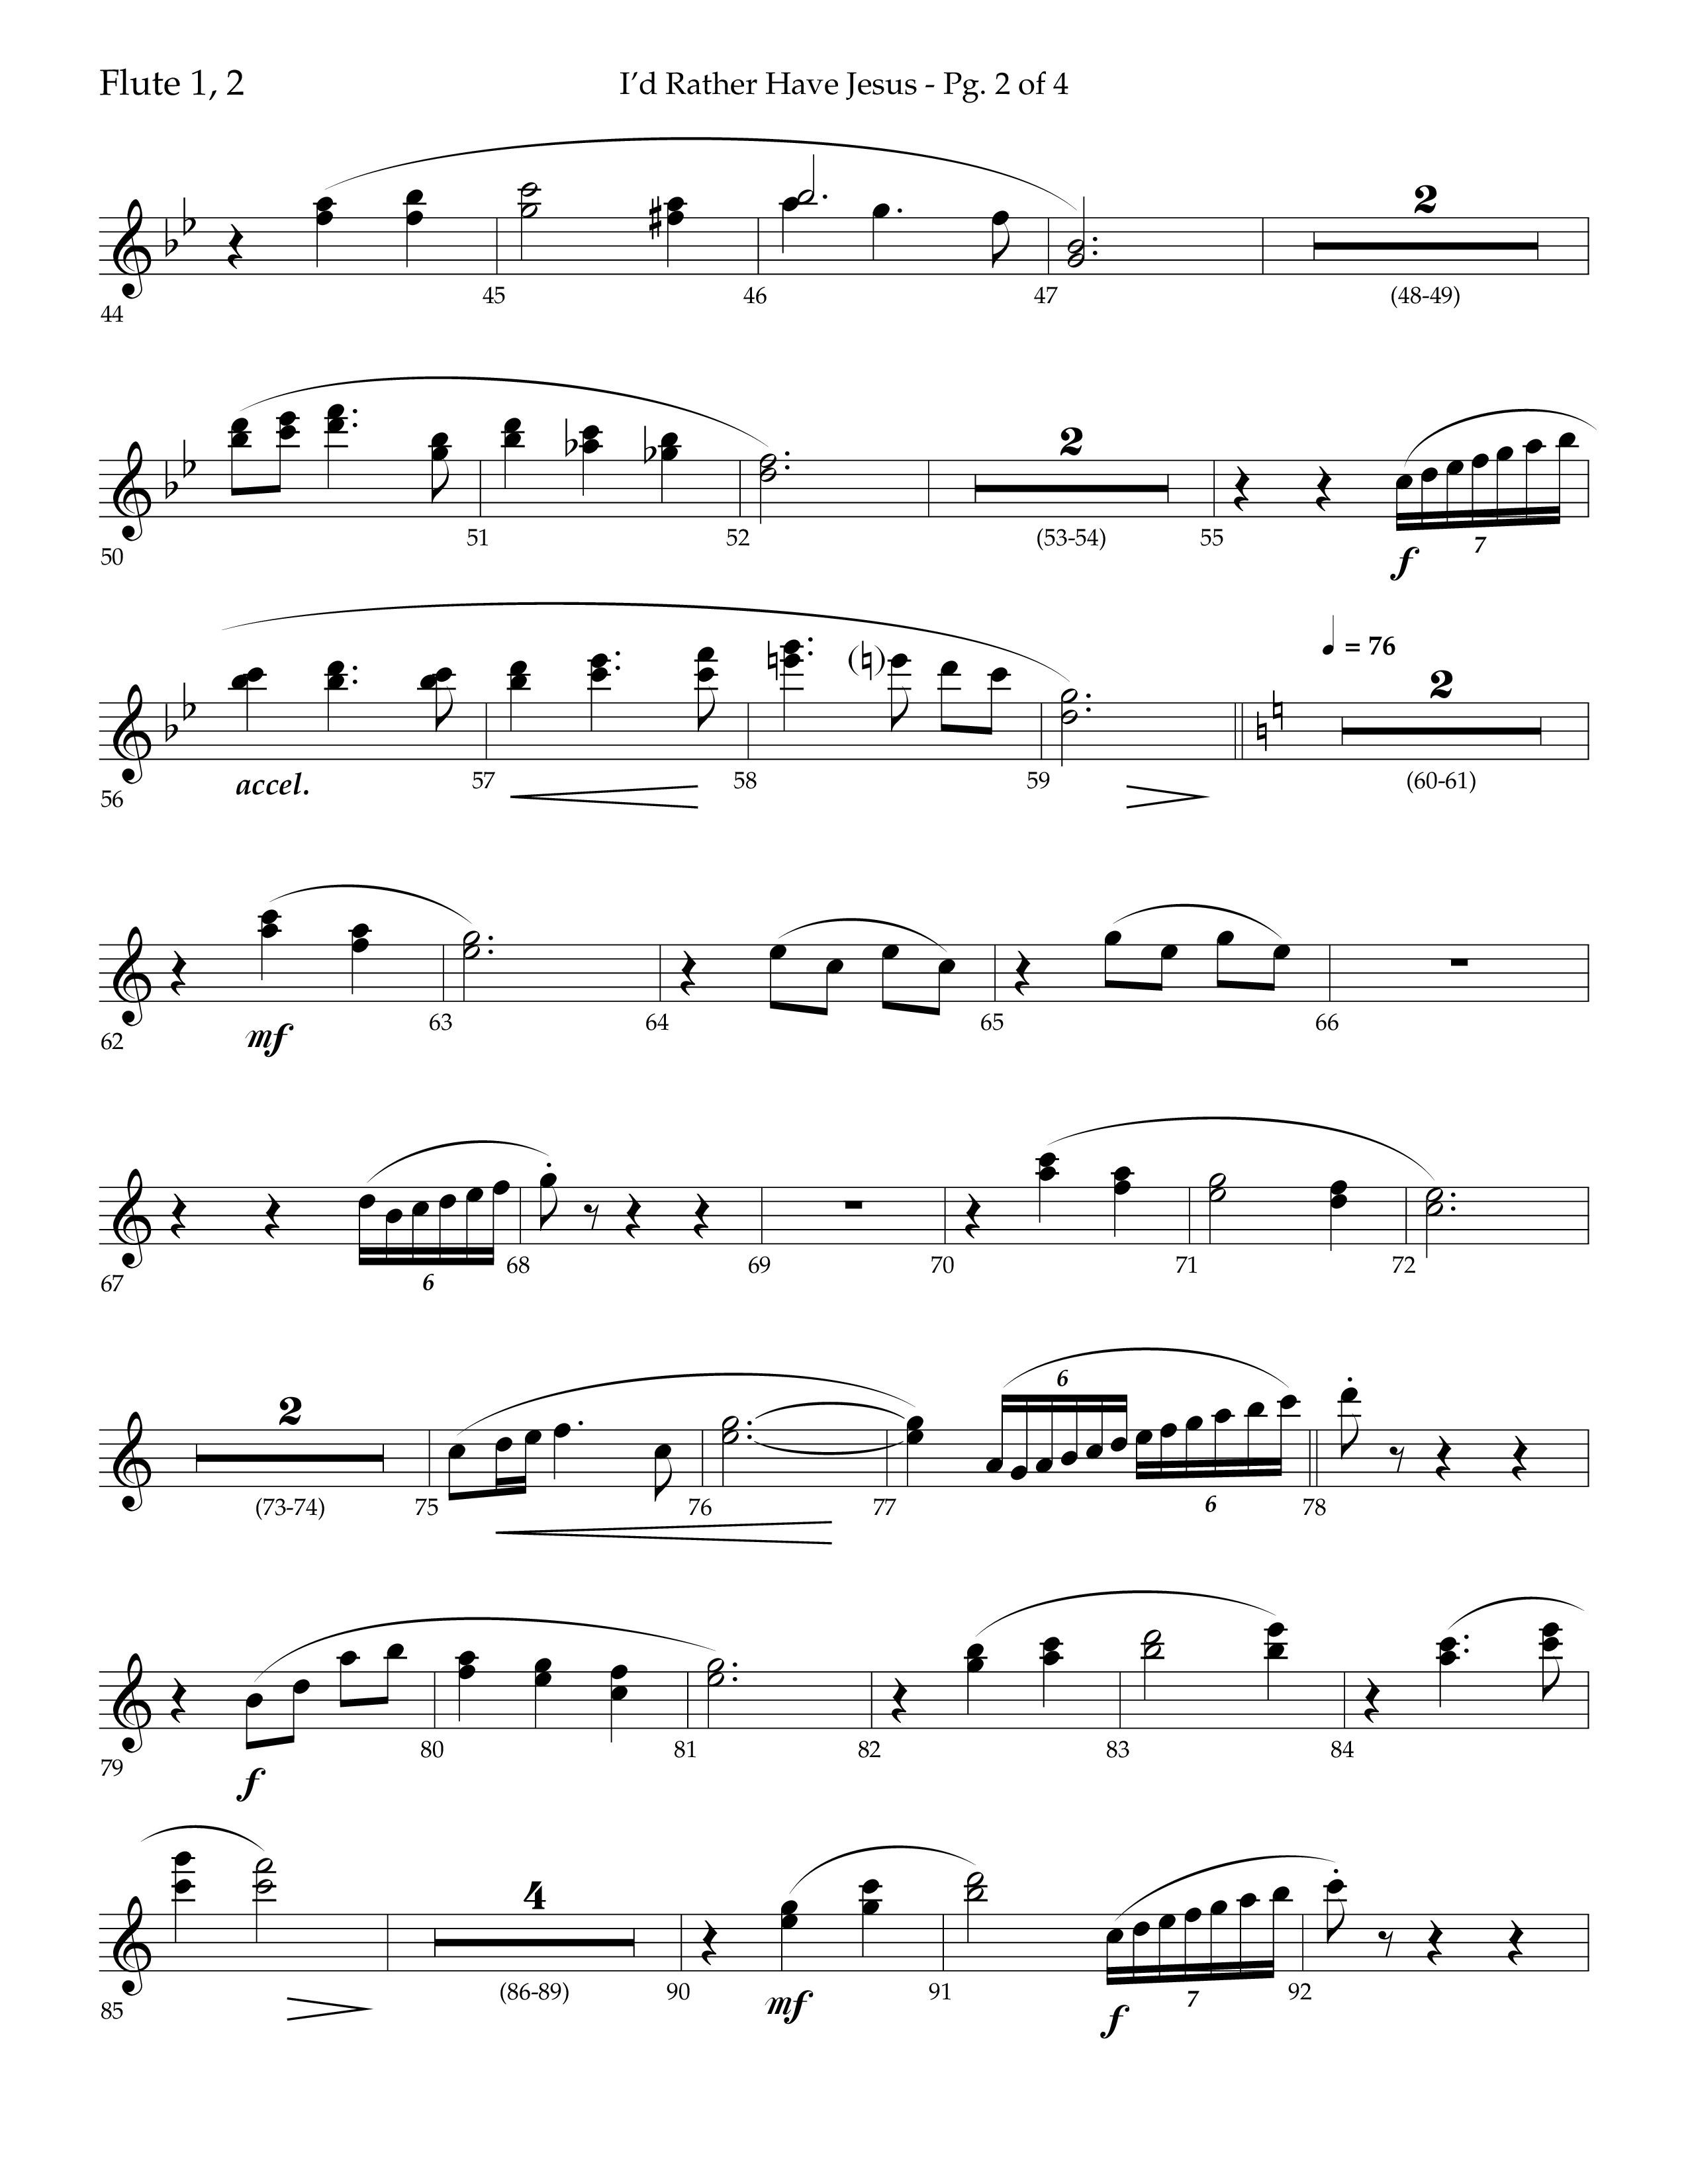 I'd Rather Have Jesus (Choral Anthem SATB) Flute 1/2 (Lifeway Choral / Arr. Richard Kingsmore)